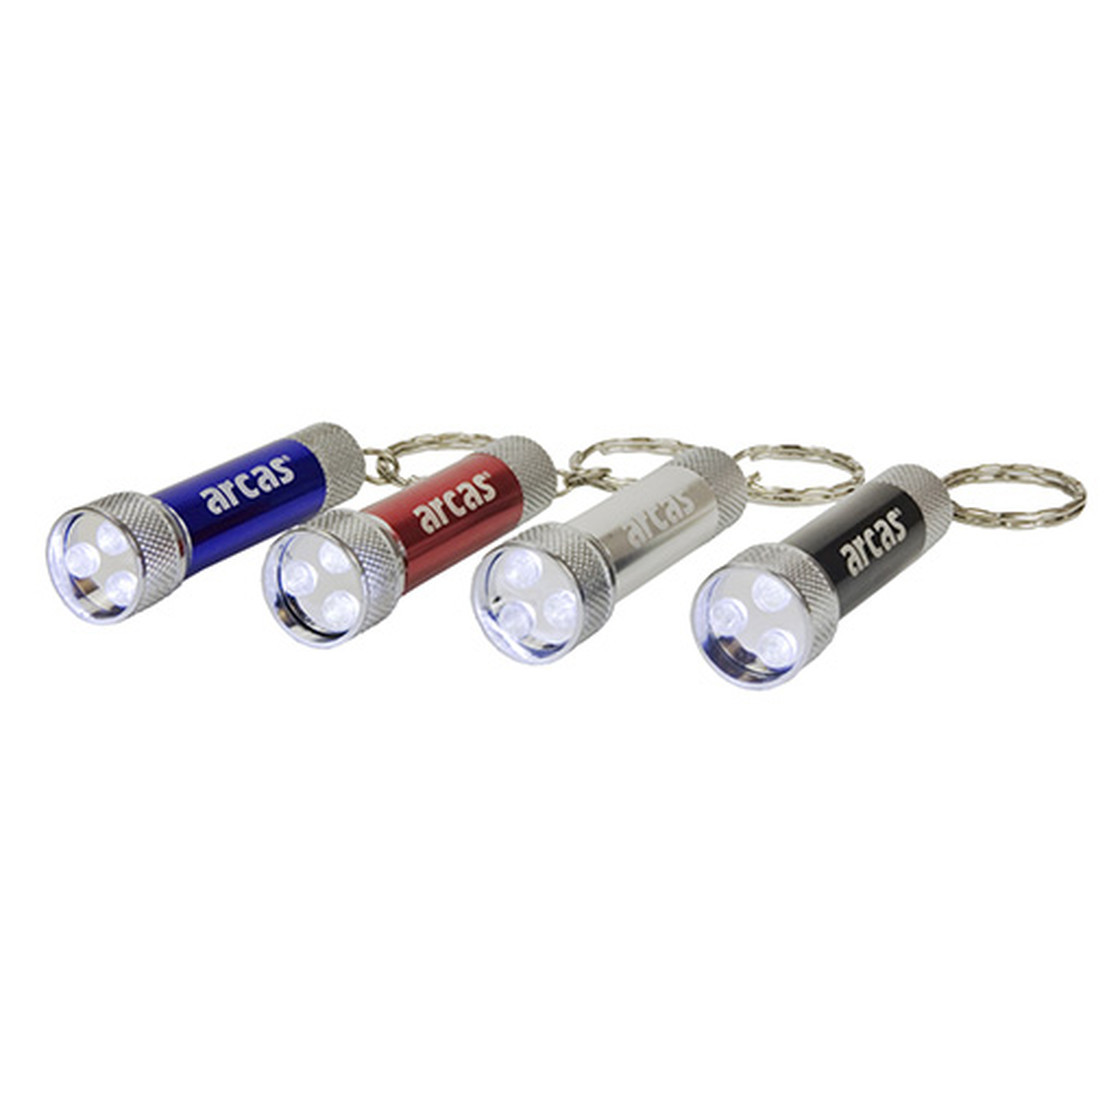 3 x LED incl Arcas LED Schlüsselanhänger 3 x LR44 Batterien 